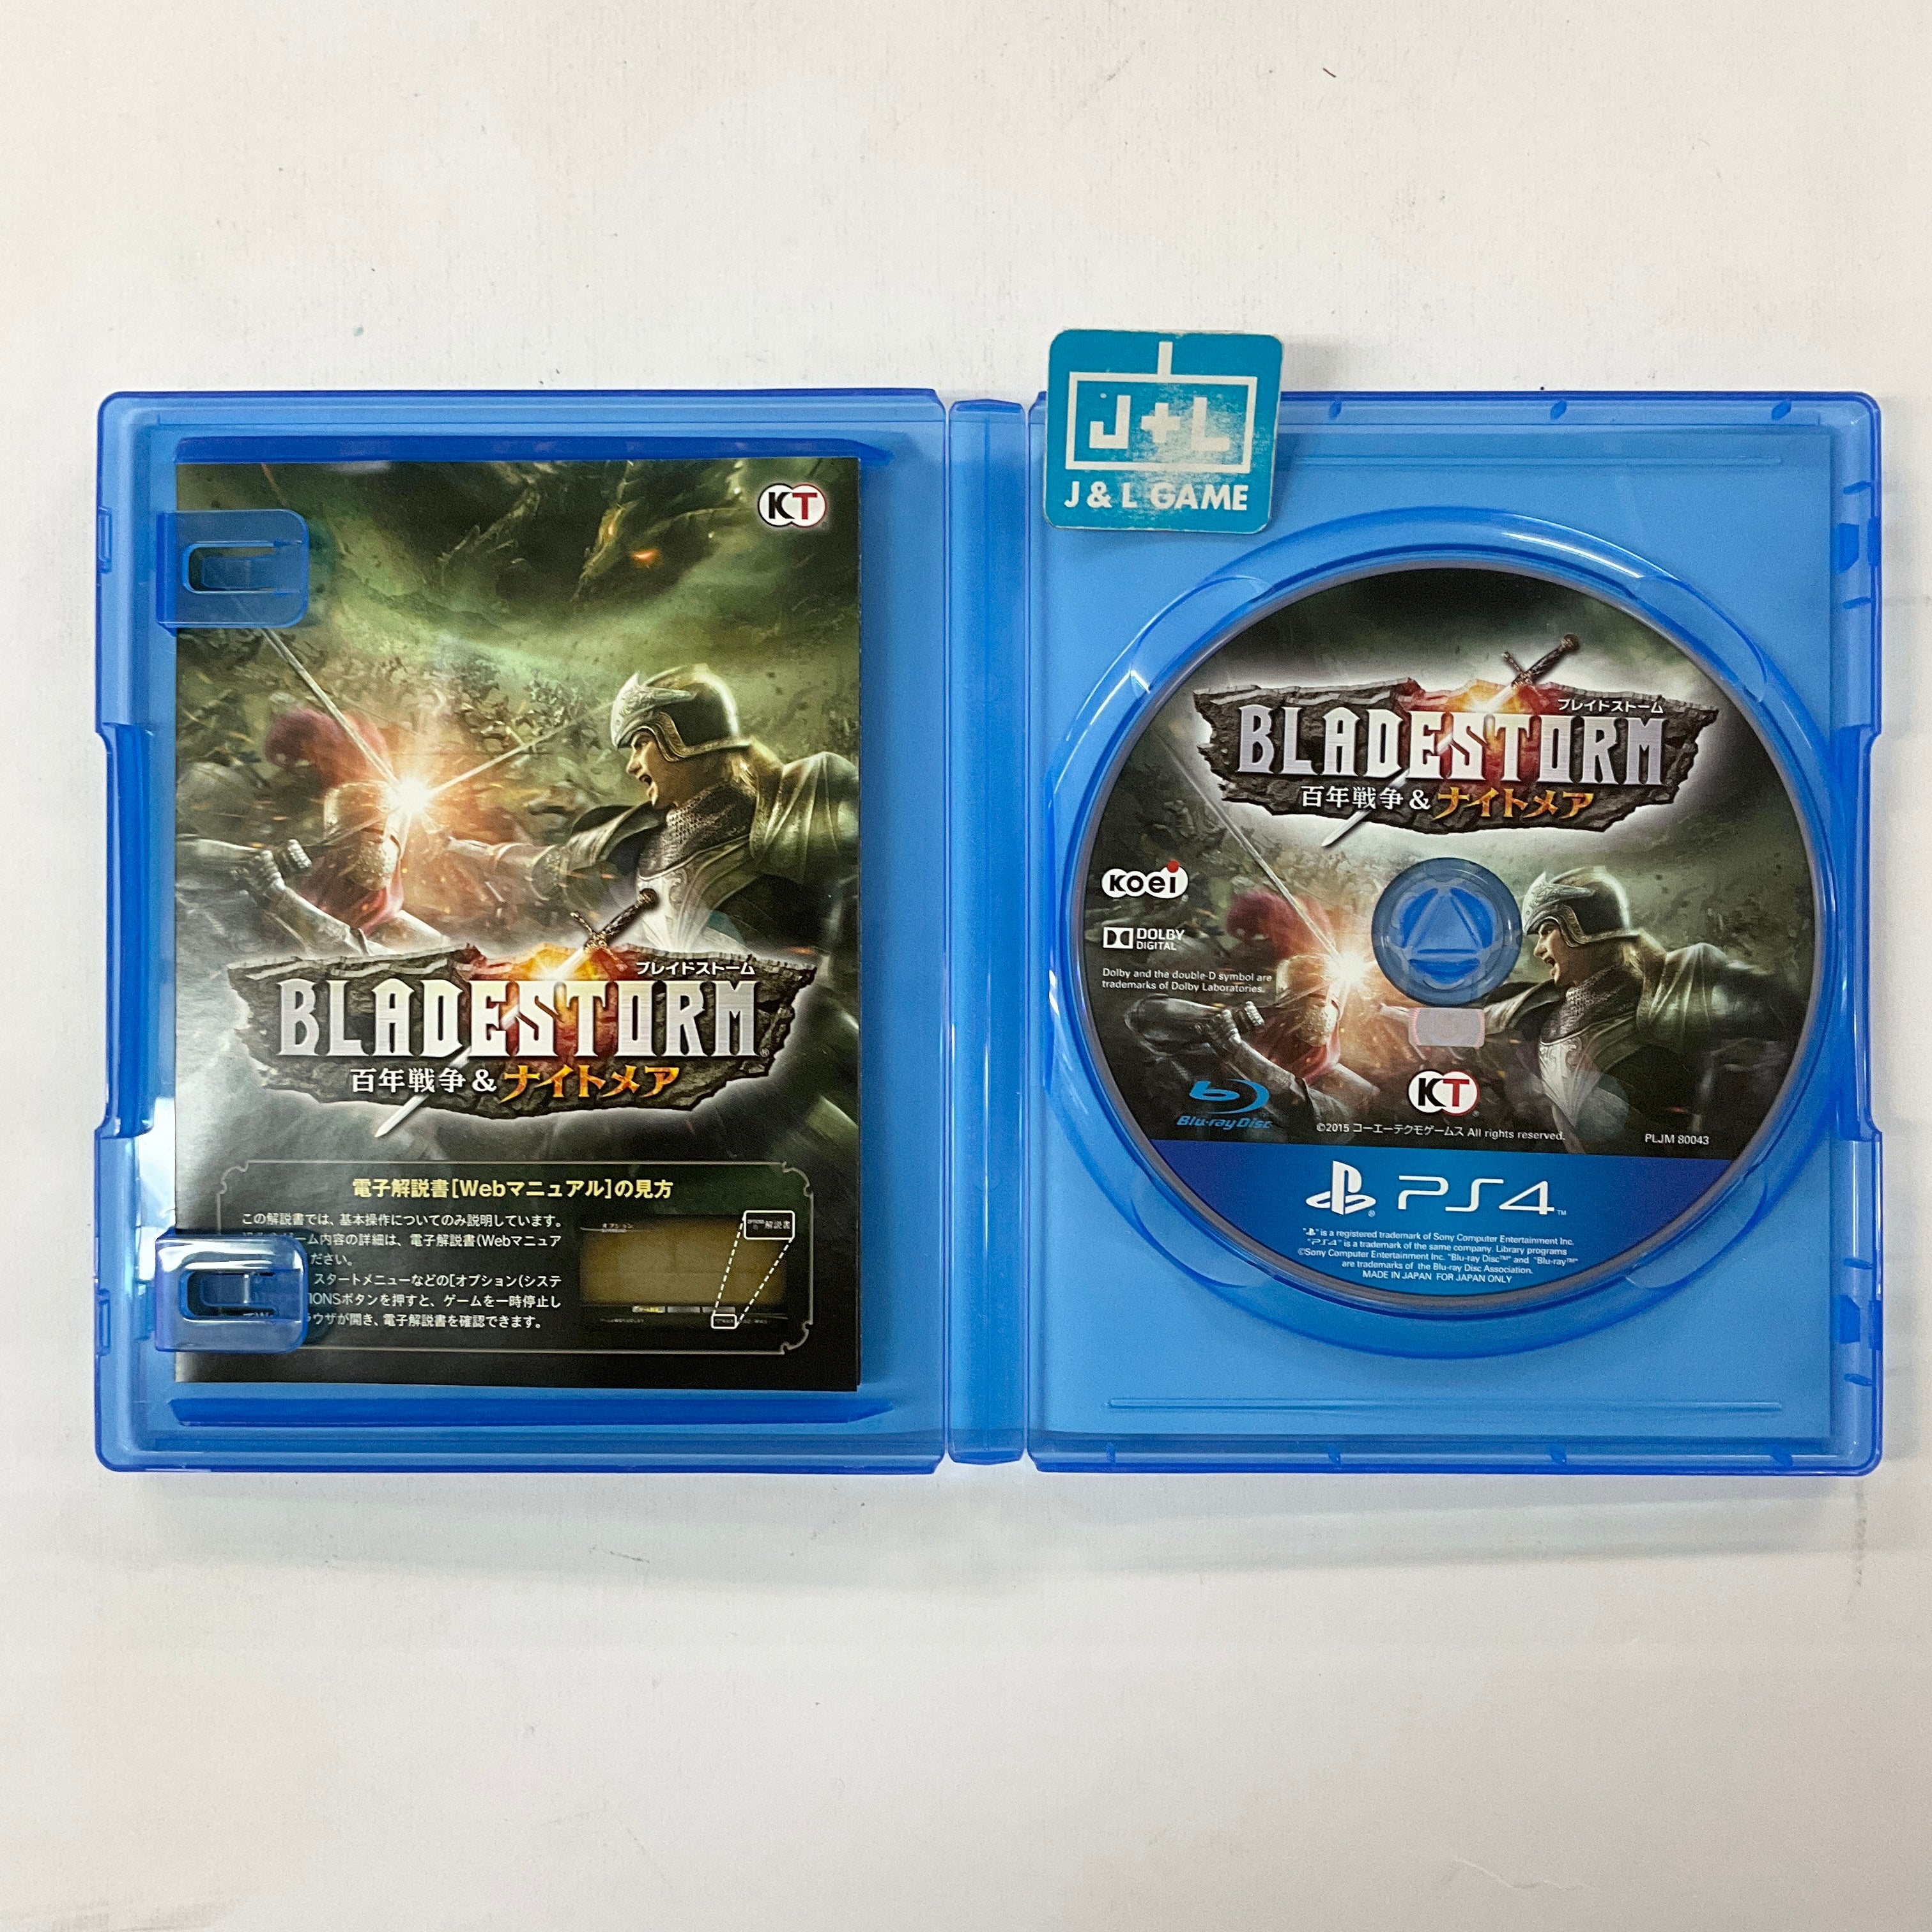 Bladestorm: Hyakunen Sensou & Nightmare - (PS4) PlayStation 4 [Pre-Owned] (Japanese Import) Video Games Koei Tecmo Games   